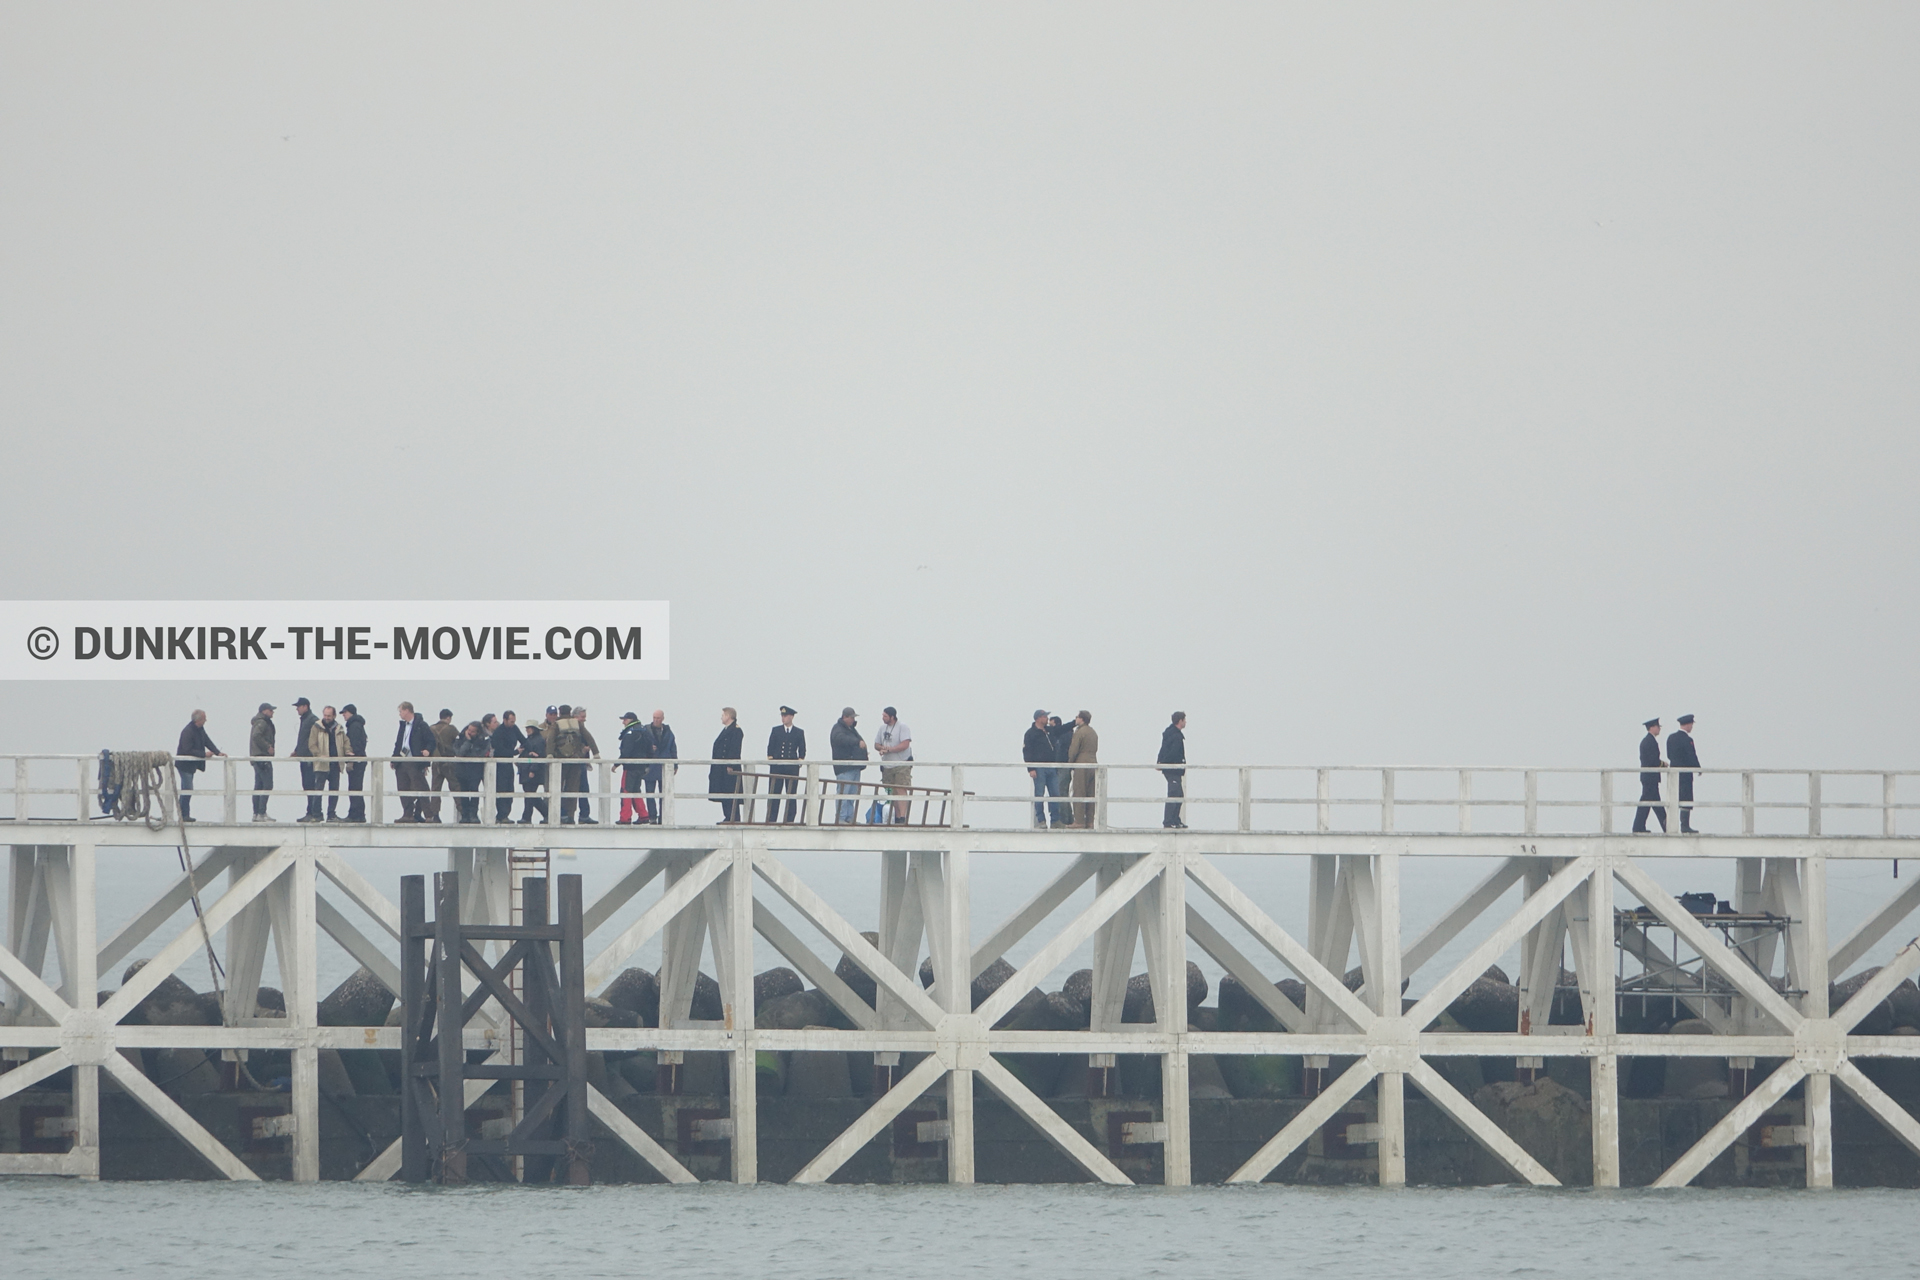 Fotos con cielo gris, muelle del ESTE, Nilo Otero,  durante el rodaje de la película Dunkerque de Nolan